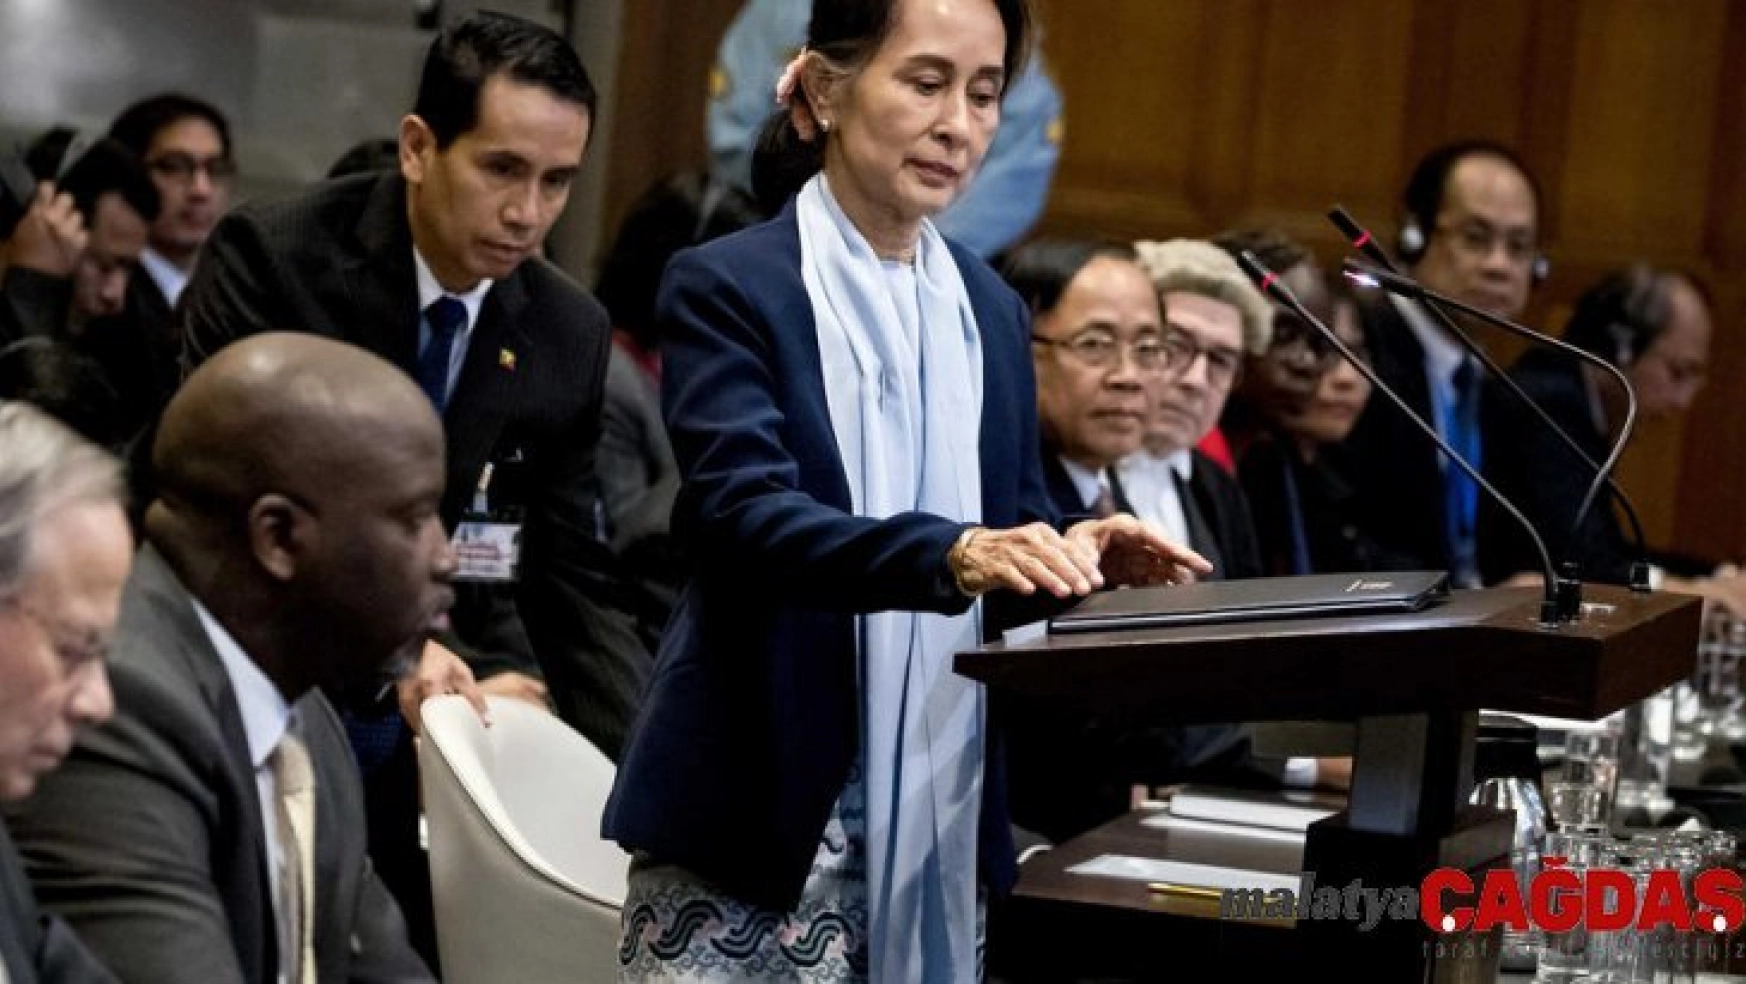 Myanmar lideri Suu Kyi, soykırım iddialarını reddetti